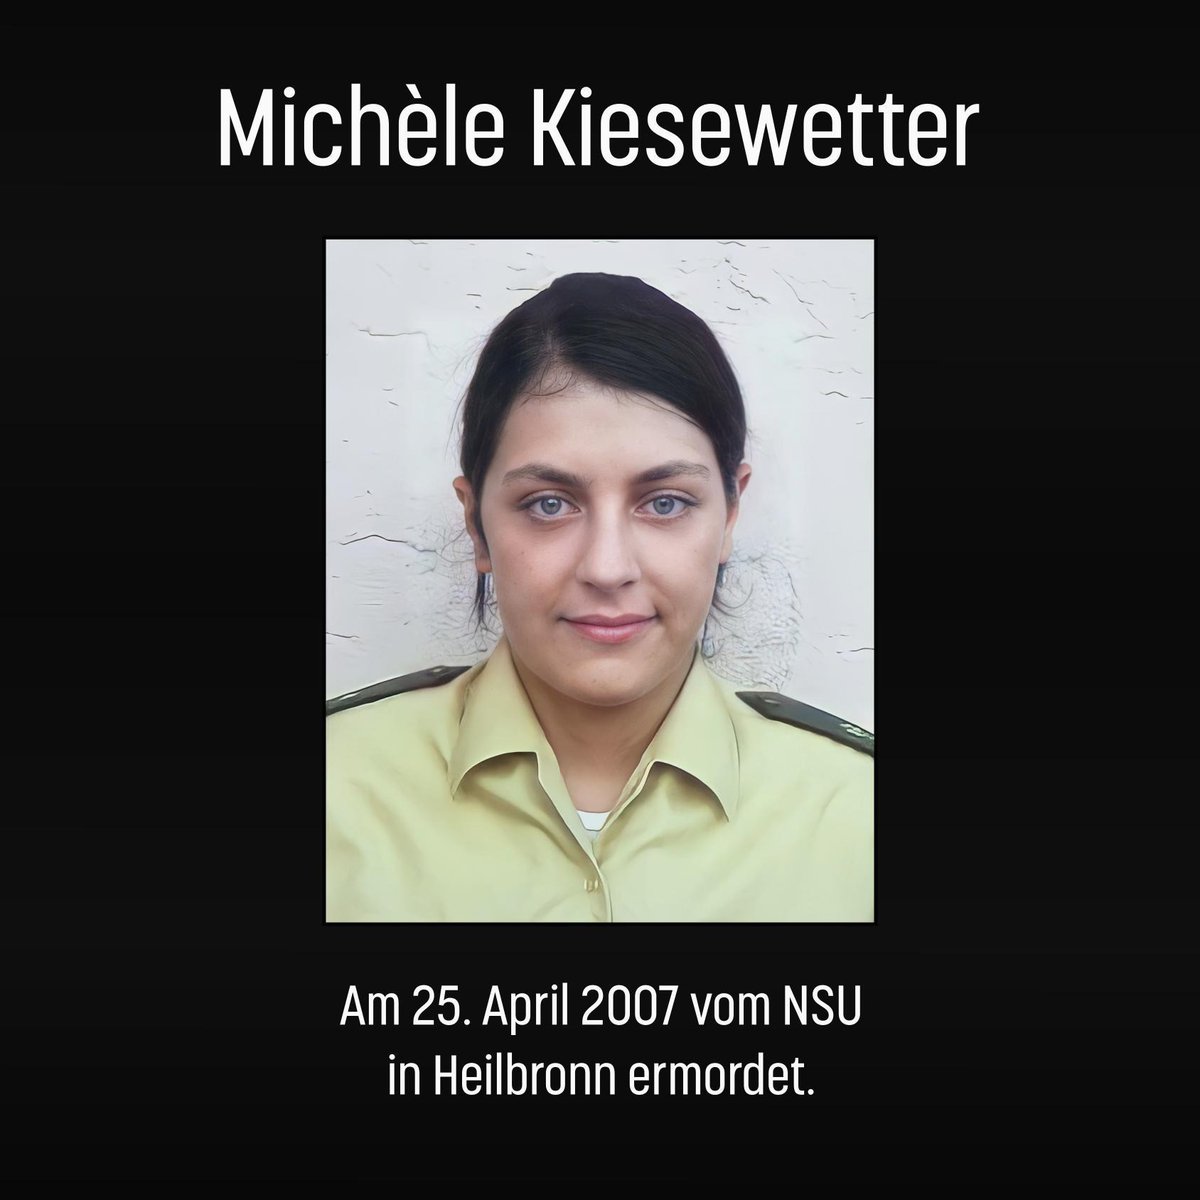 Wir gedenken: Heute vor 17 Jahren, am 25. April 2007, wurde Michèle Kiesewetter in ihrem Streifenwagen auf der Theresienwiese in #Heilbronn vom #NSU ermordet. Sie wurde 22 Jahre alt. Ihr Kollege Martin A. überlebte schwer verletzt.
#KeinSchlussstrich #KeinVergessen